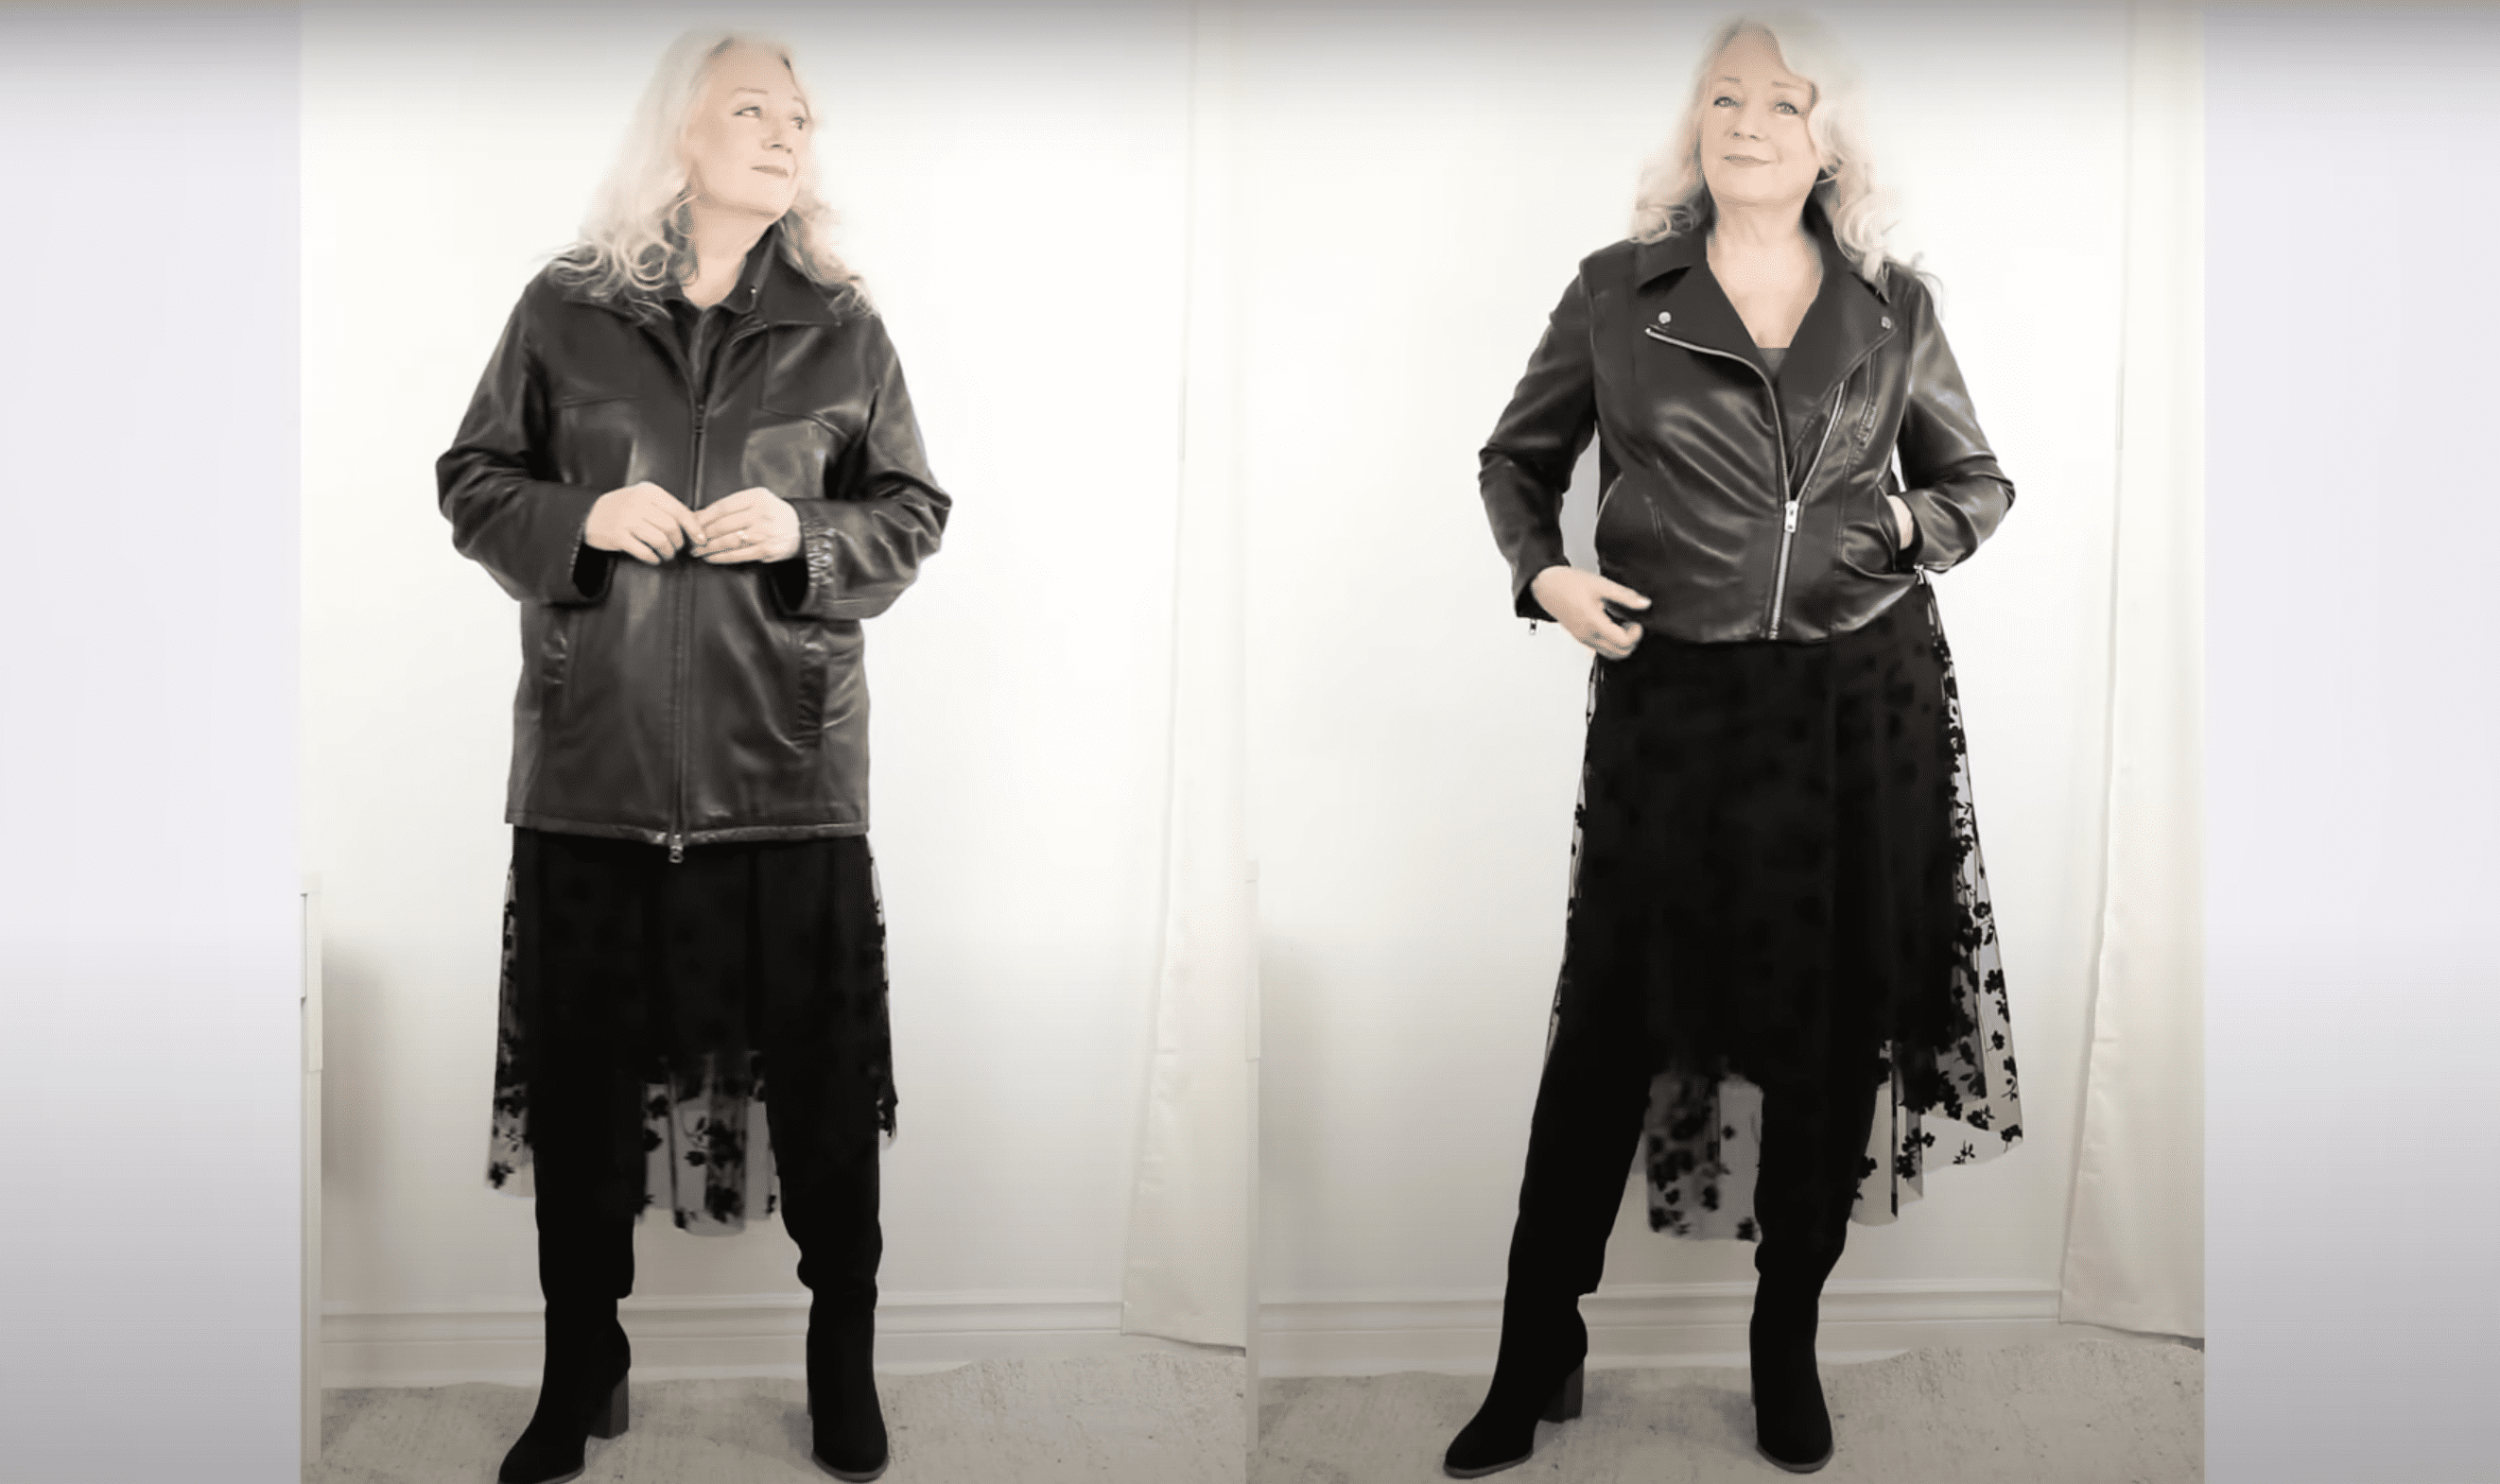 Heather con una vieja chaqueta de cuero versus una nueva chaqueta de imitación con un estilo moderno. | Foto: YouTube.com/Awesome over 50